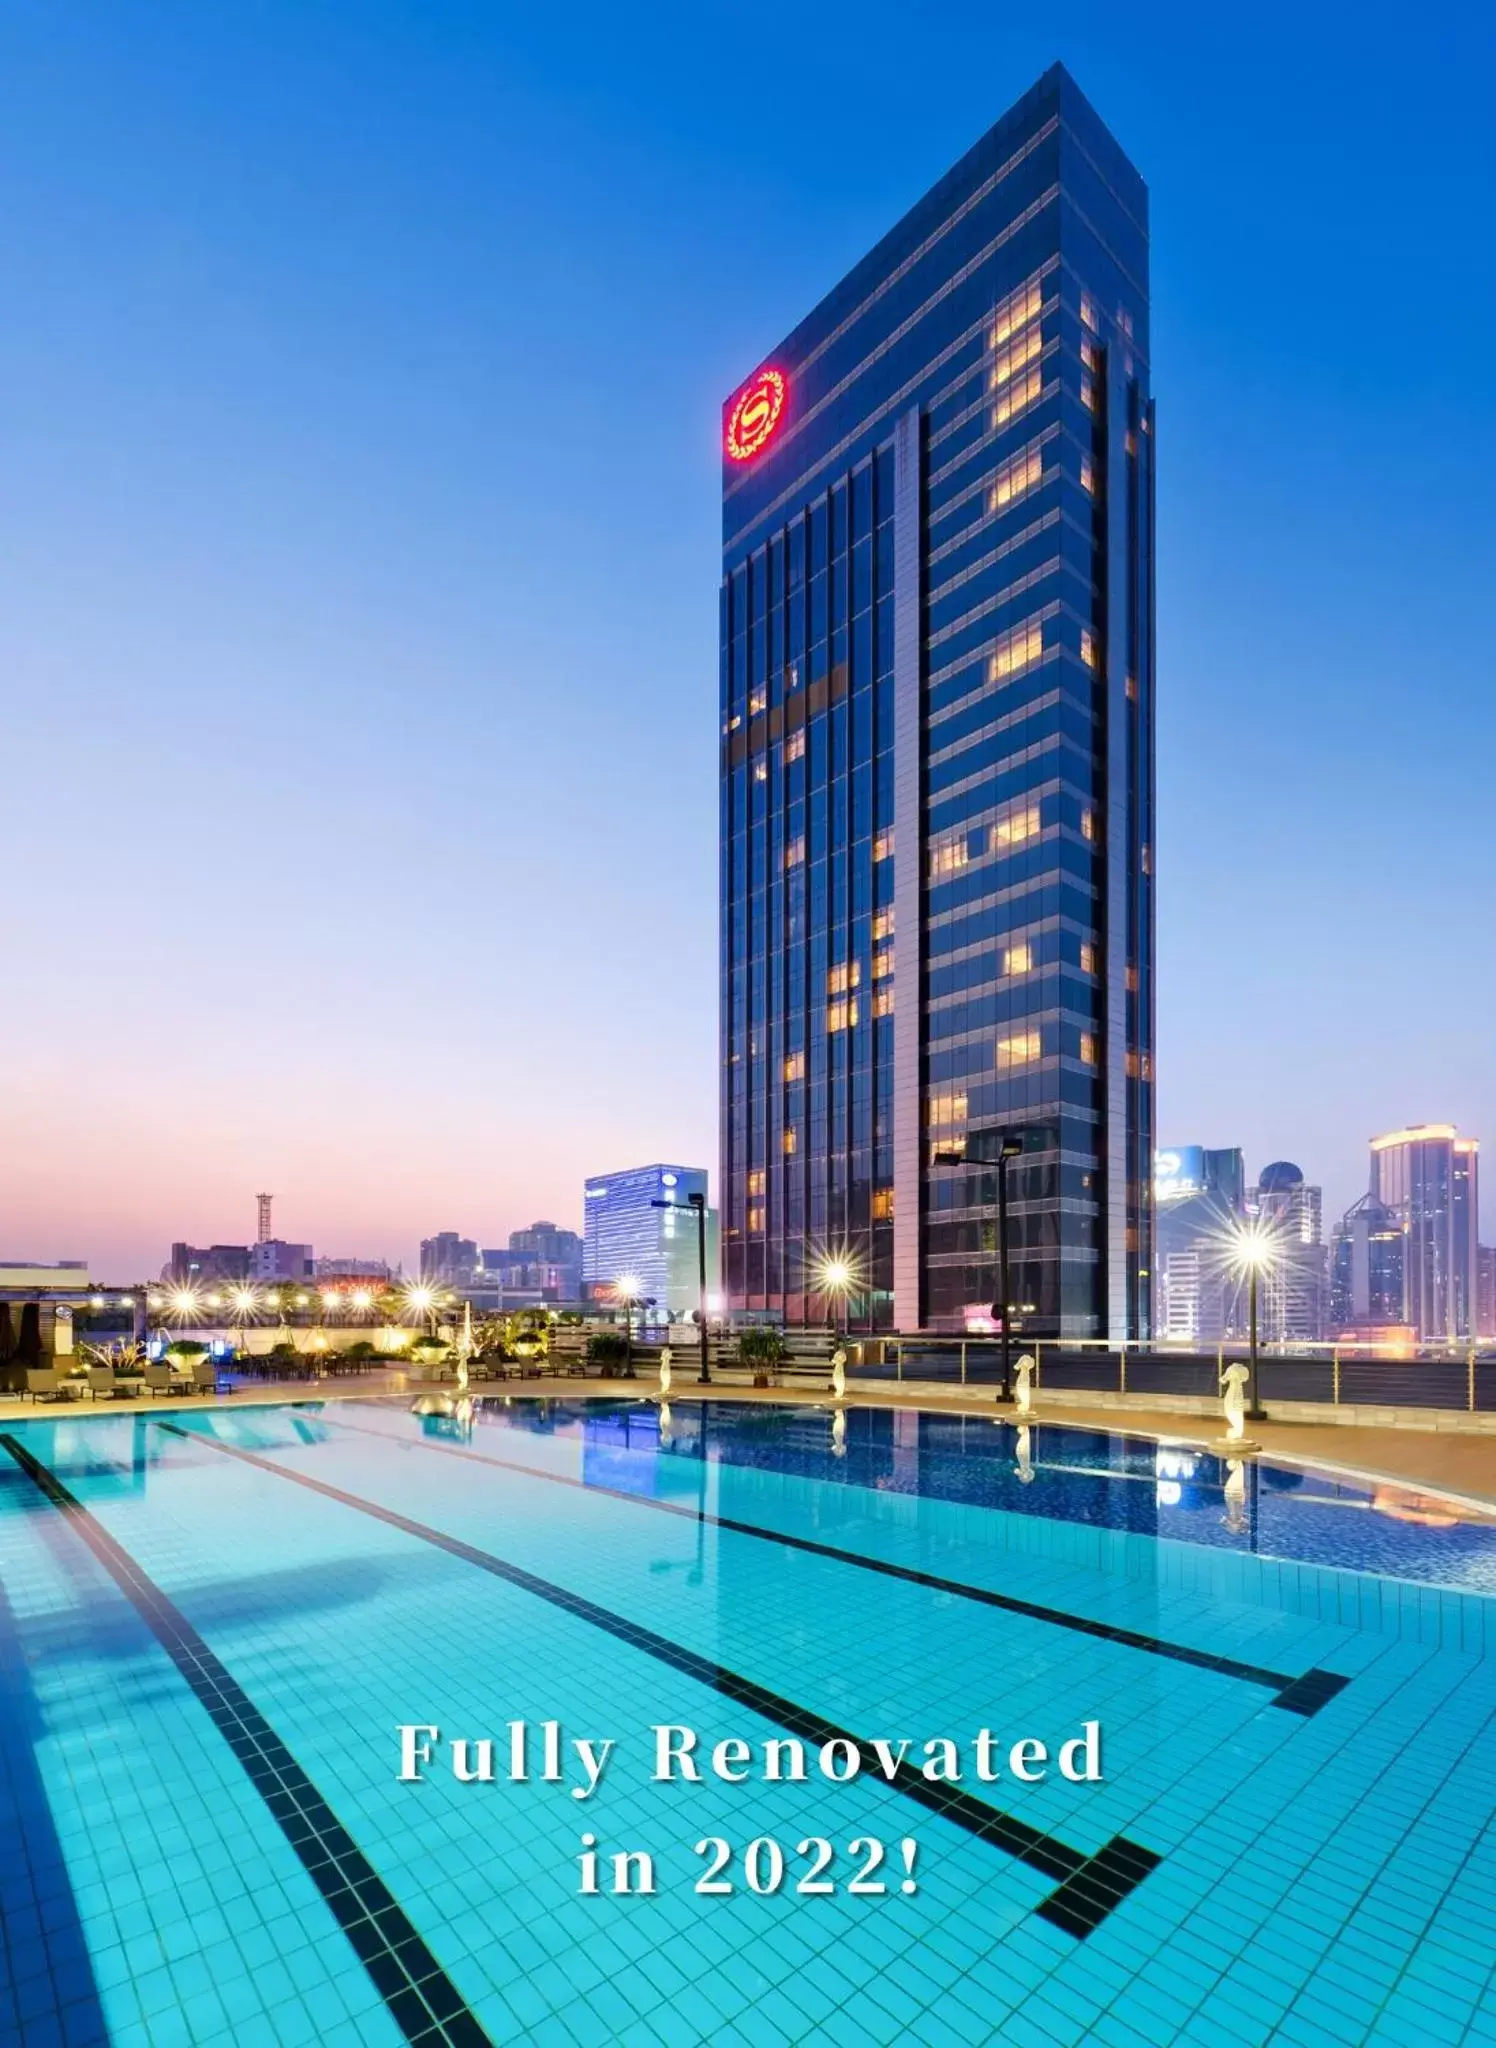 Property building, Swimming Pool in Sheraton Guangzhou Hotel